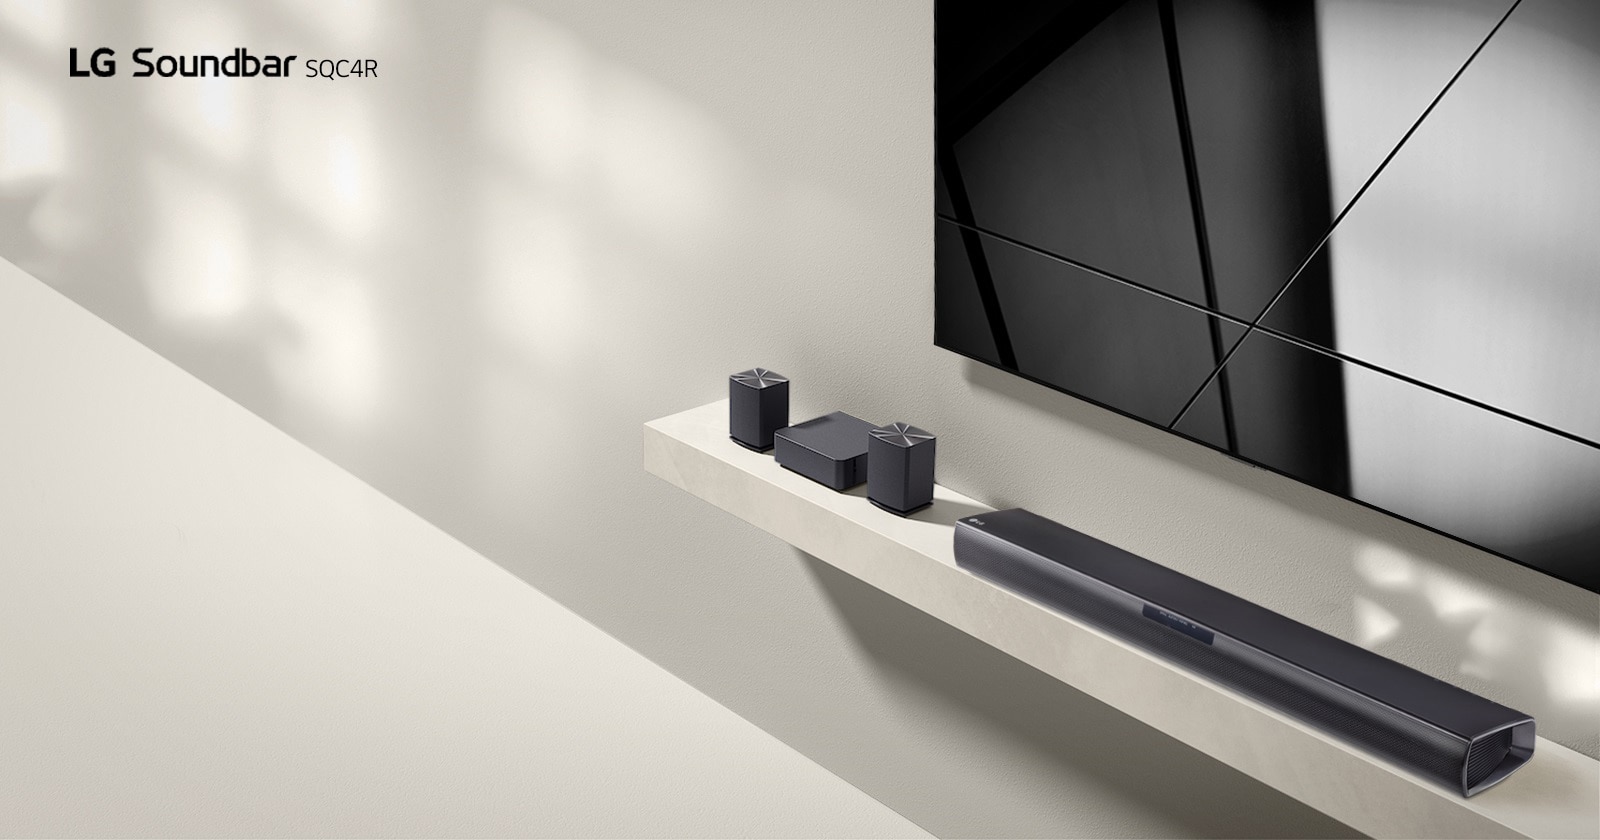 Die LG Soundbar SQC4R und der LG-Fernseher stehen zusammen im Wohnzimmer. Der Fernseher ist eingeschaltet und zeigt ein grafisches Bild an.